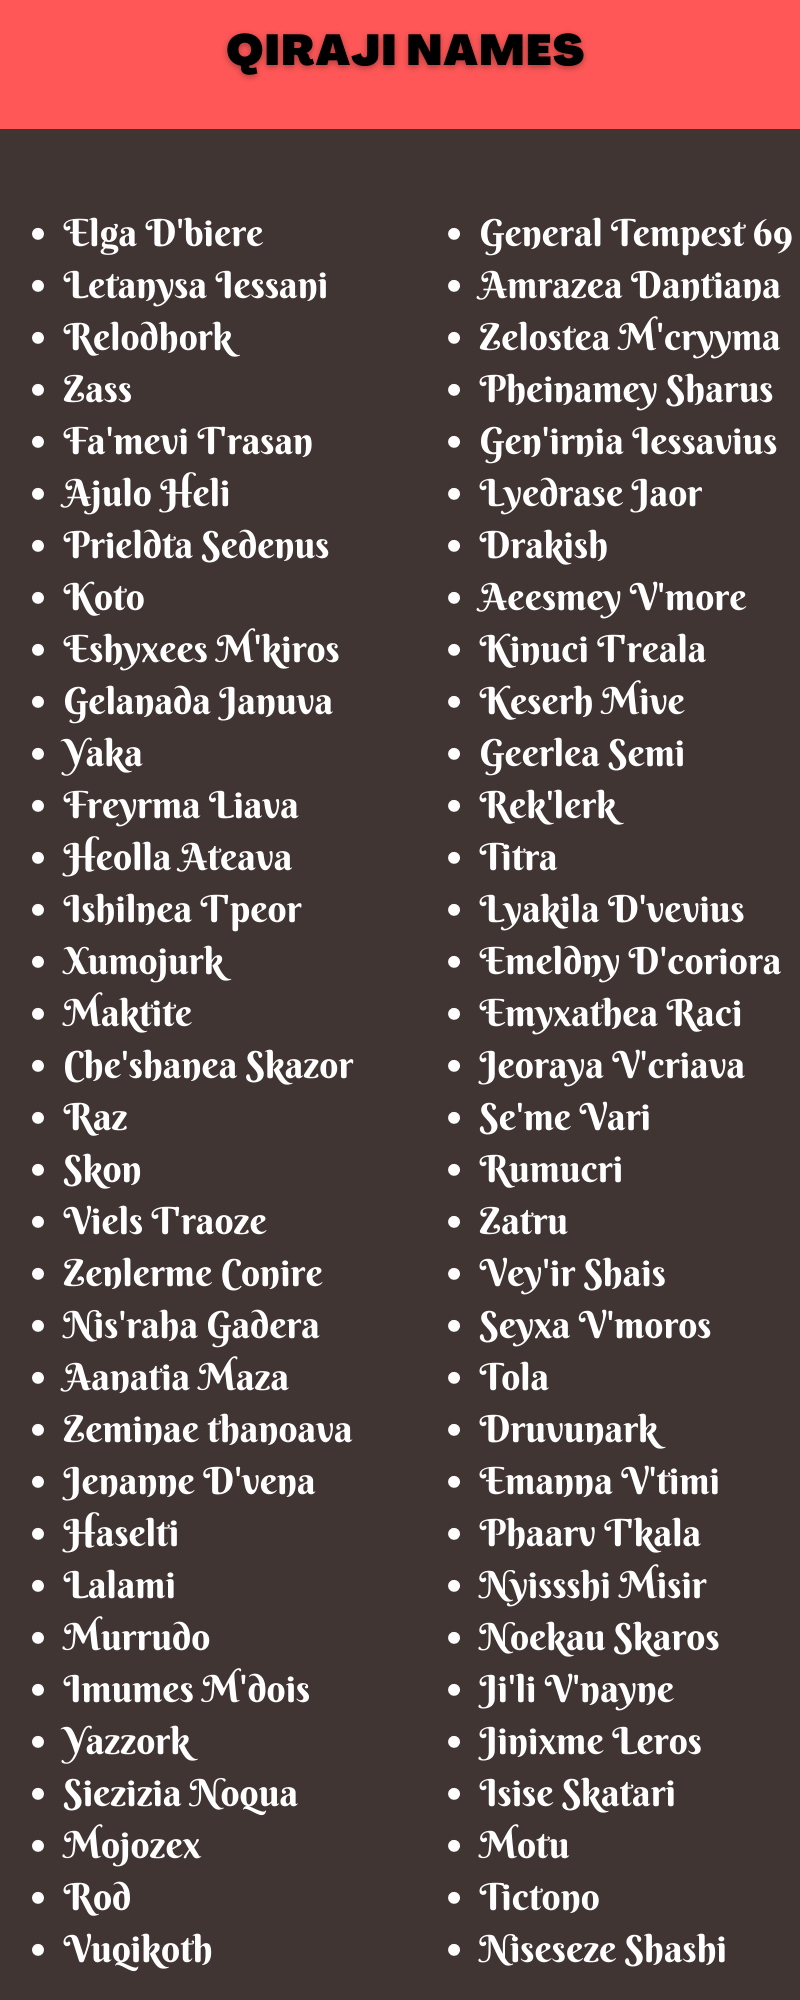 Qiraji Names